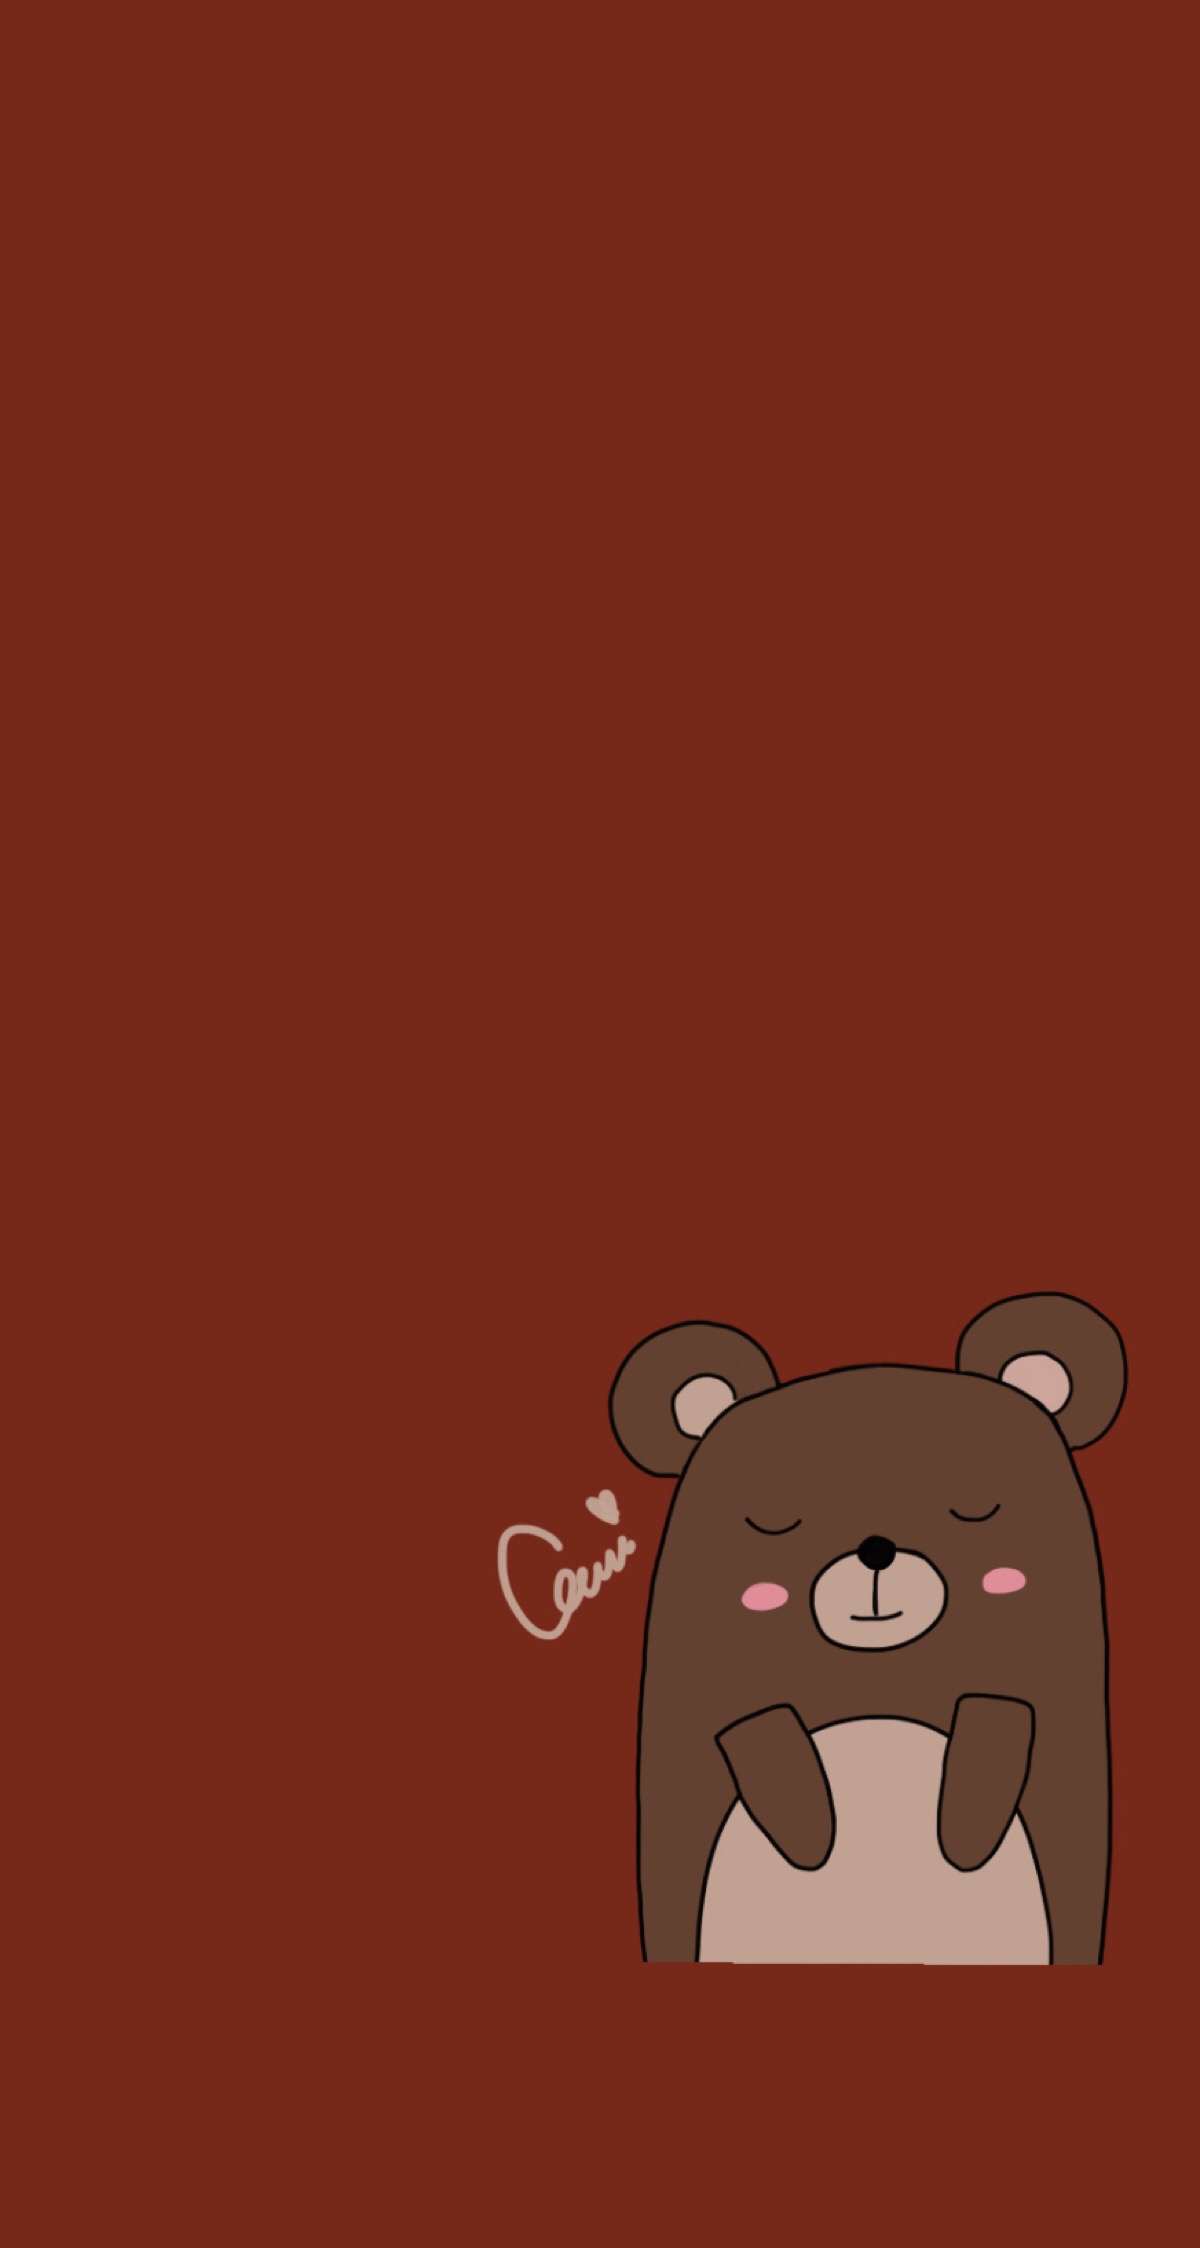 原创iphone壁纸套图背景,插图,可爱,小熊